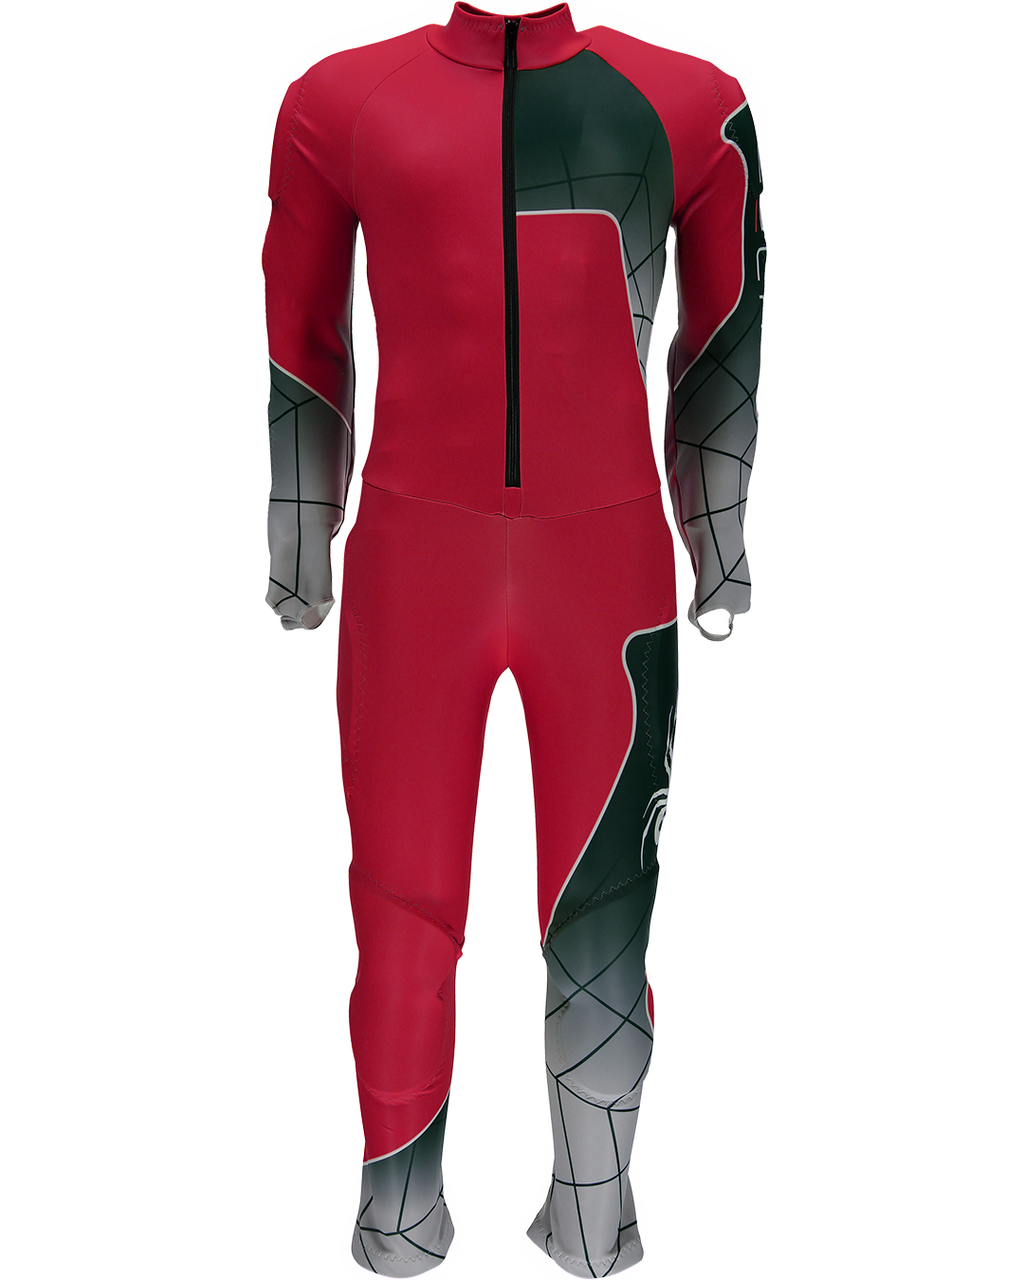 Spyder Nine Ninety GS Boys Race Suit 2017